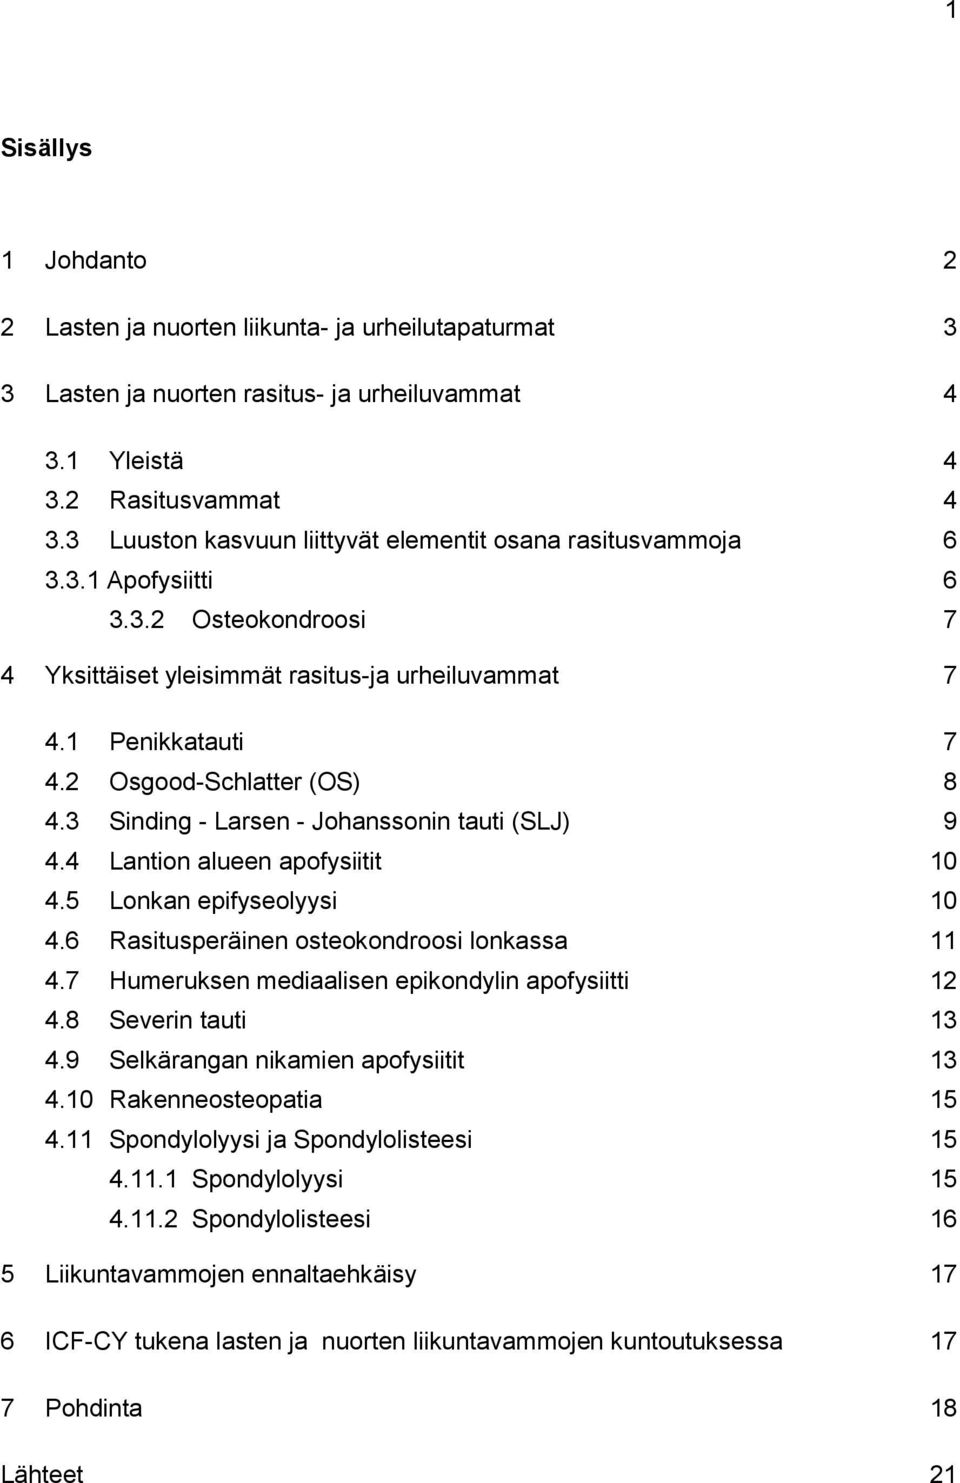 2 Osgood-Schlatter (OS) 8 4.3 Sinding - Larsen - Johanssonin tauti (SLJ) 9 4.4 Lantion alueen apofysiitit 10 4.5 Lonkan epifyseolyysi 10 4.6 Rasitusperäinen osteokondroosi lonkassa 11 4.